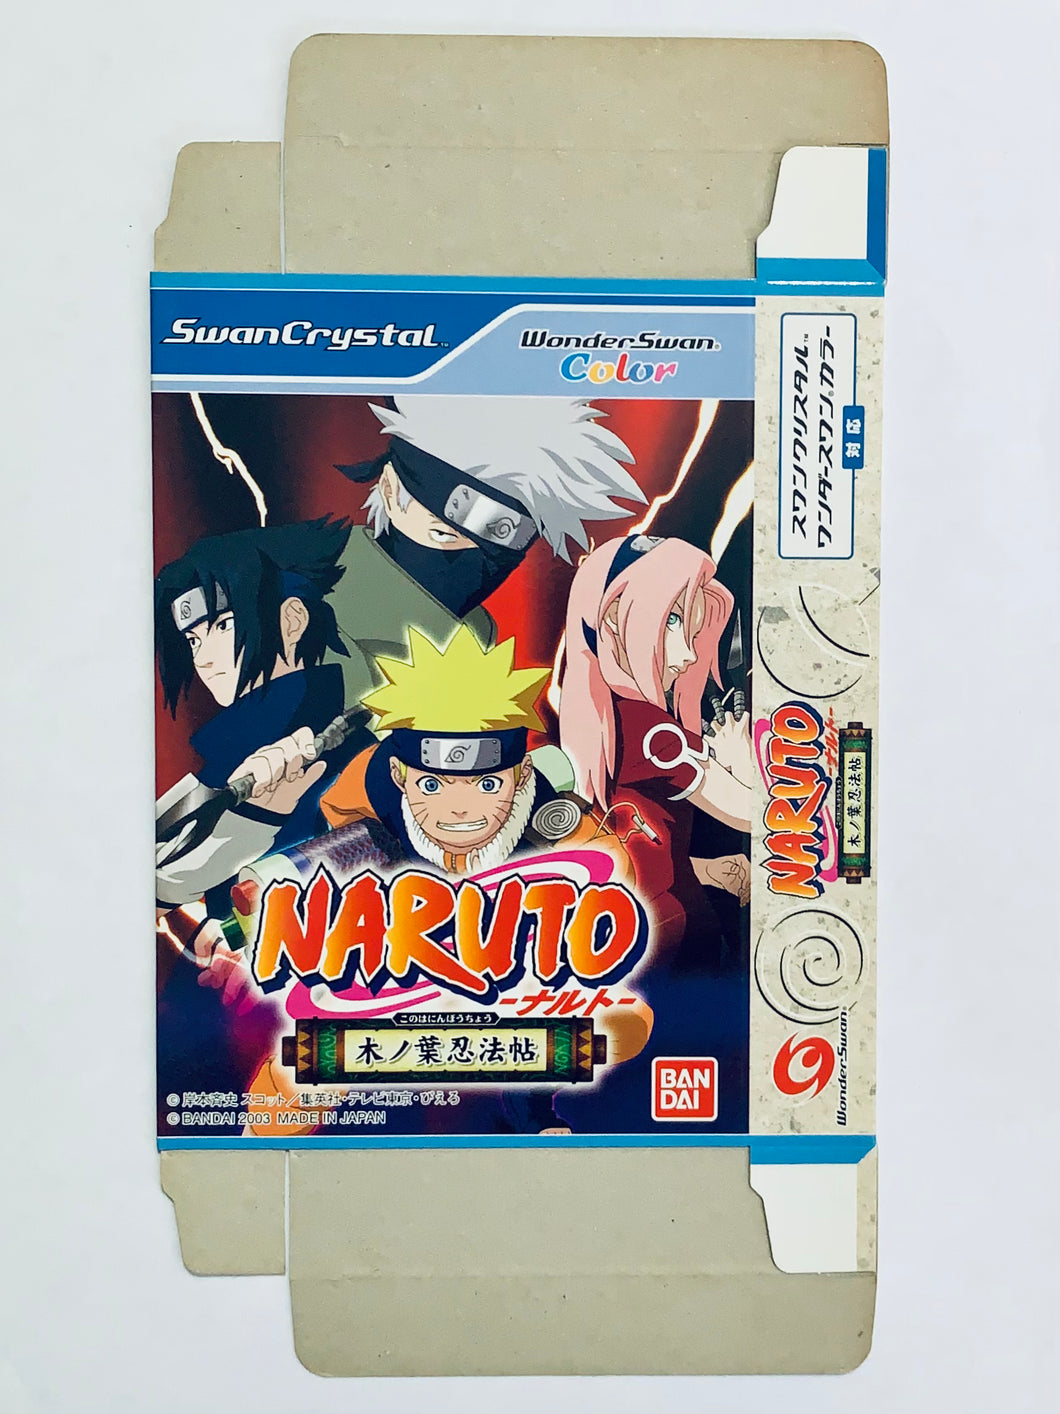 Naruto: Konoha Ninpouchou - WonderSwan Color - WSC - JP - Box Only (SWJ-BANC38)